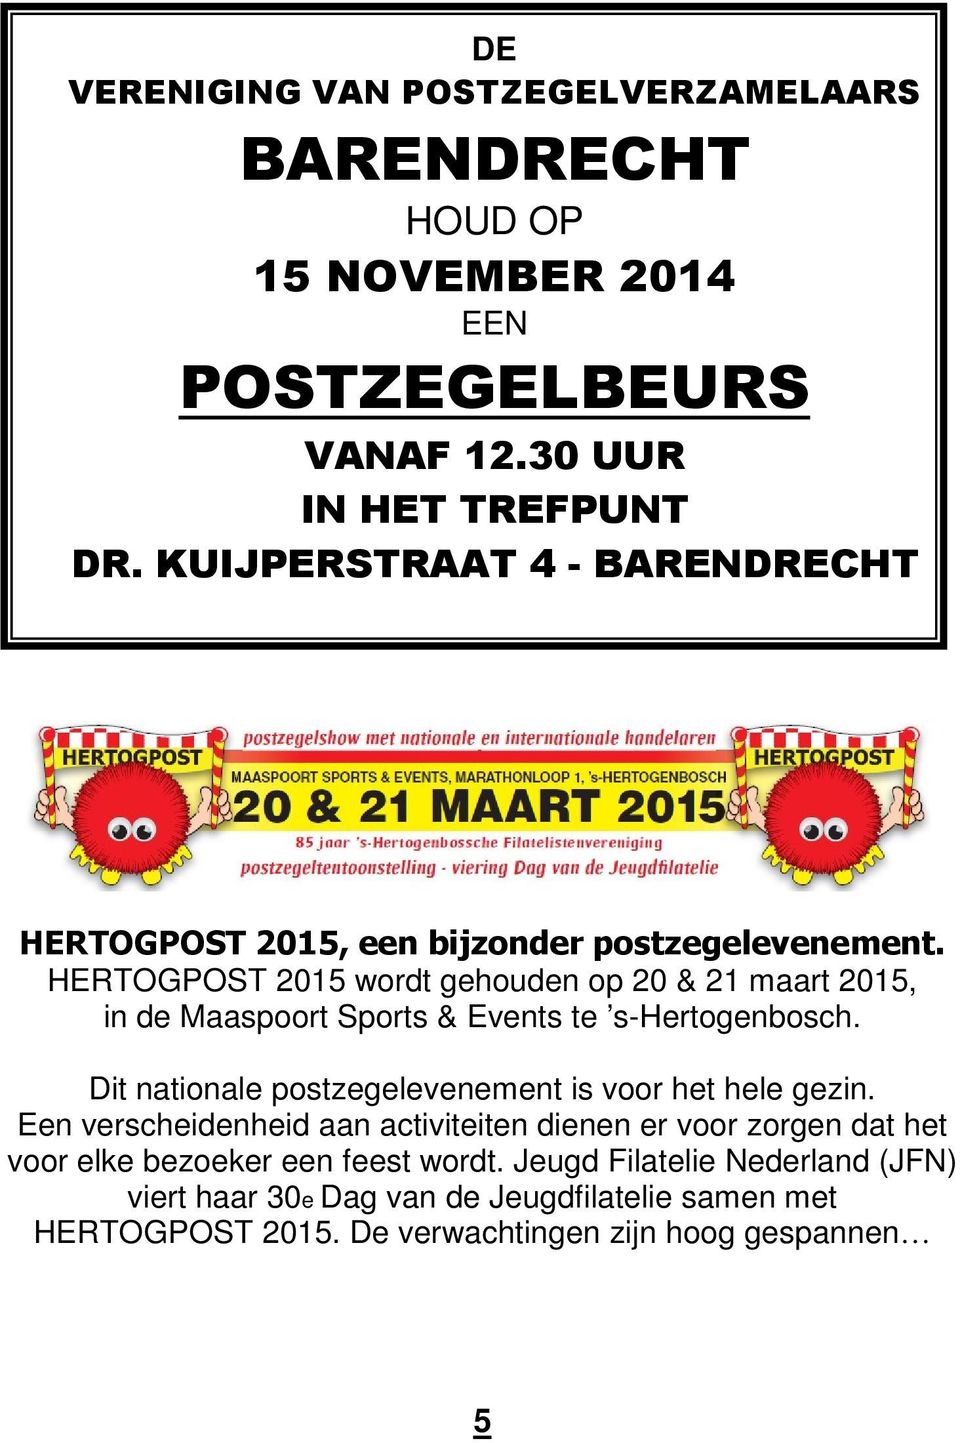 HERTOGPOST 2015 wordt gehouden op 20 & 21 maart 2015, in de Maaspoort Sports & Events te s-hertogenbosch.